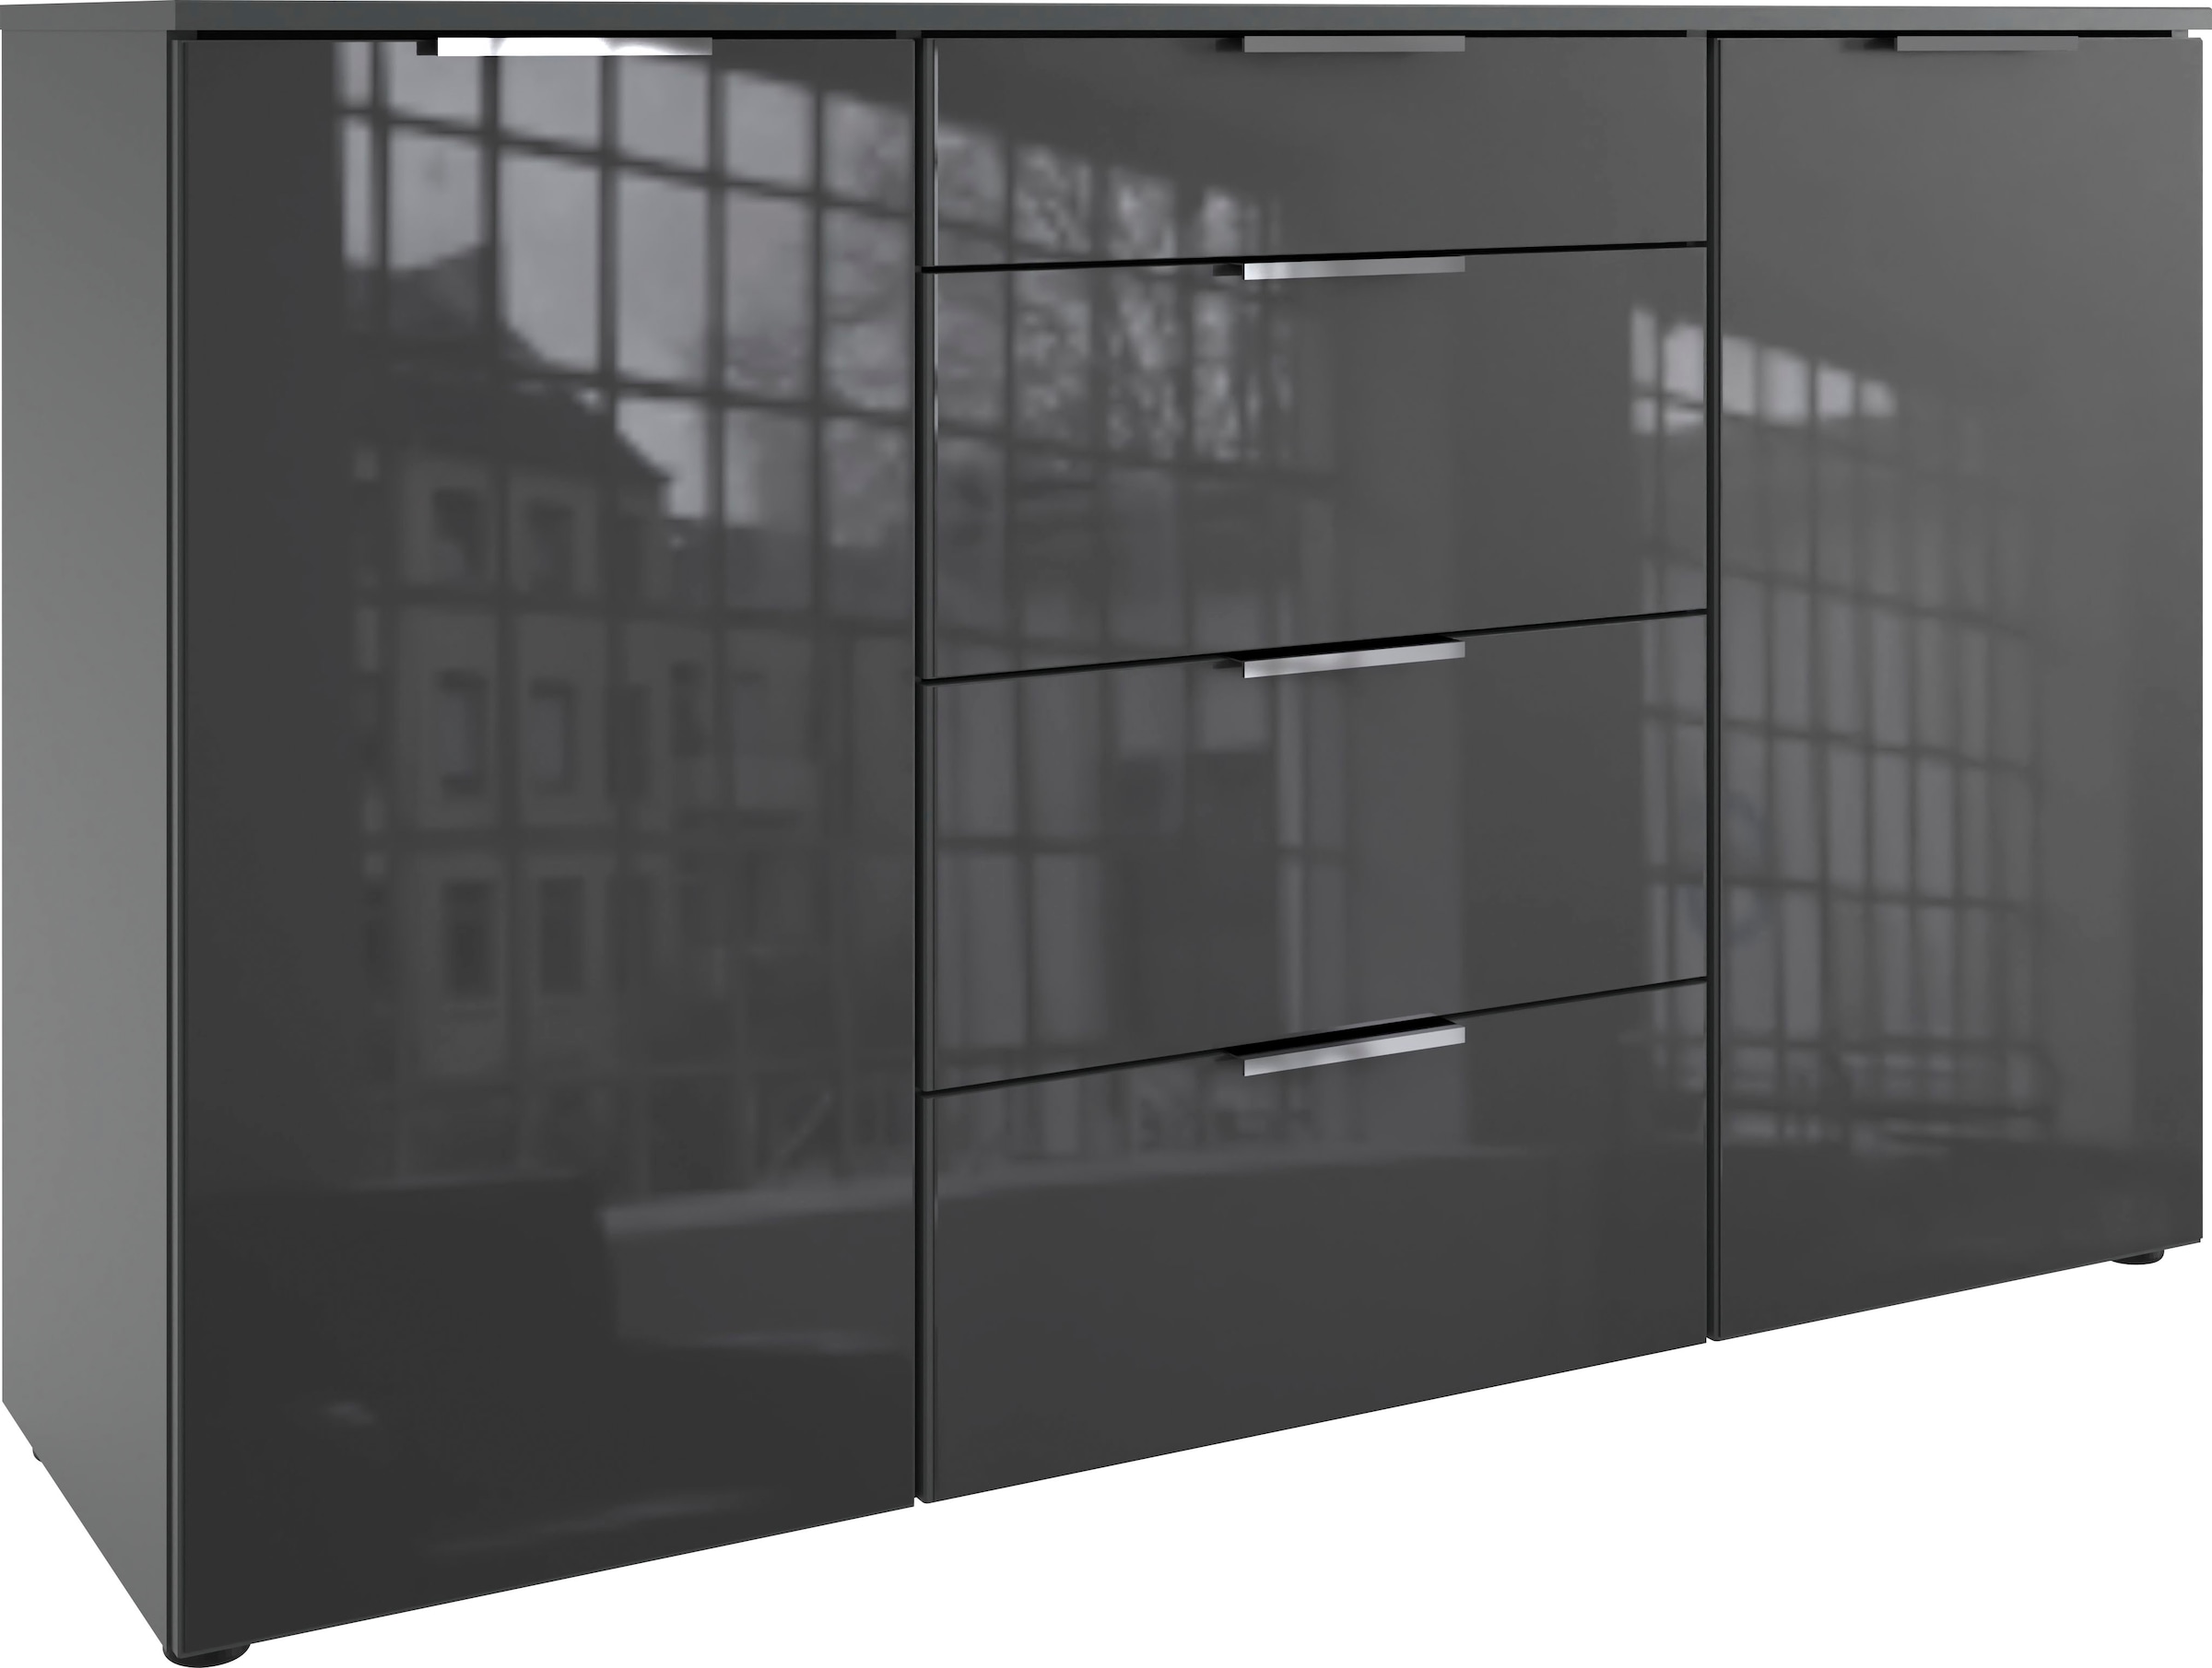 Wimex Kombikommode »Level36 C by fresh to go«, mit Glaselementen auf der Front, soft-close Funktion, 135cm breit